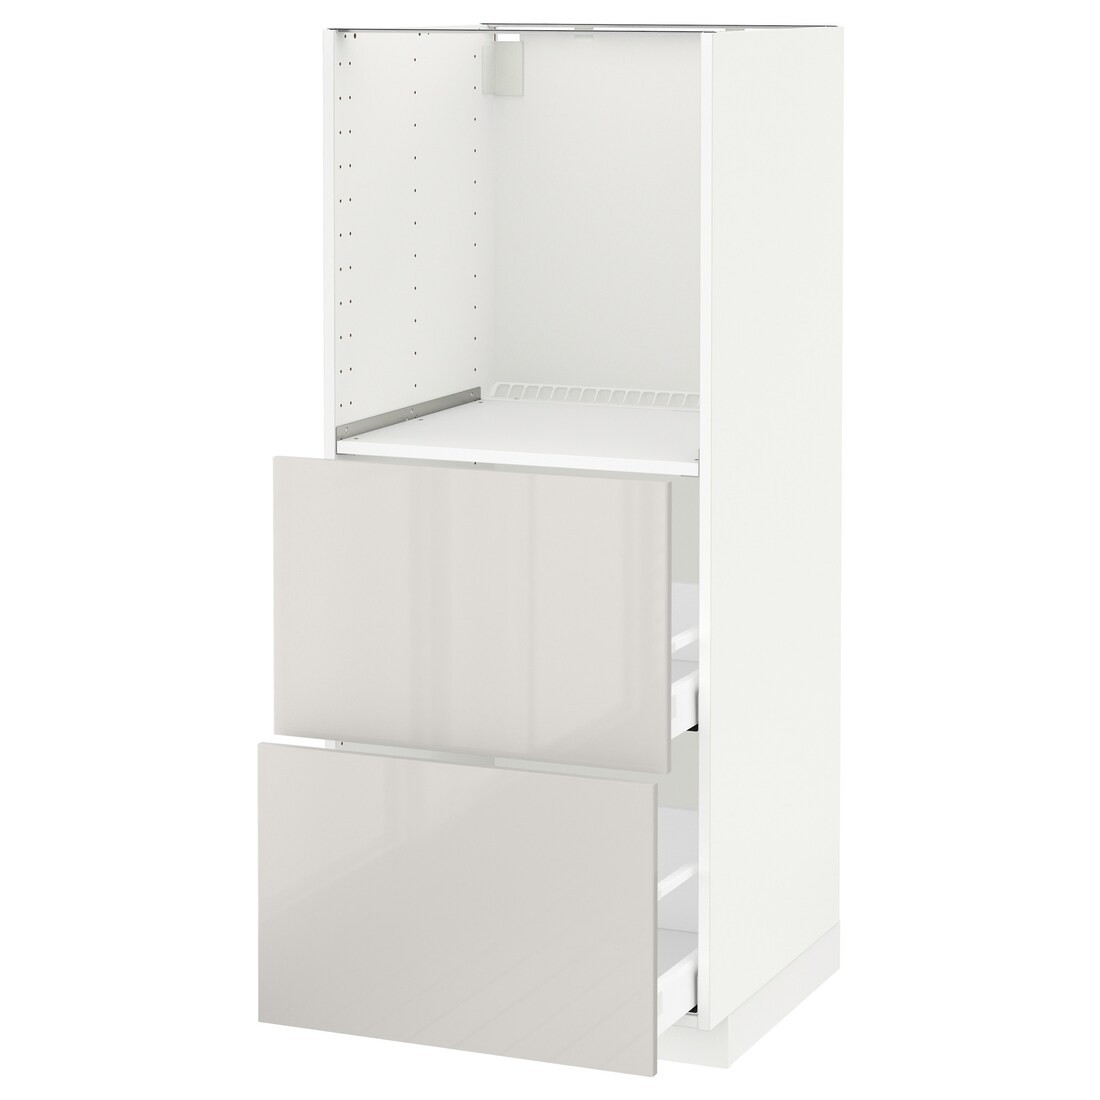 IKEA METOD МЕТОД / MAXIMERA МАКСИМЕРА Высокий шкаф с 2 ящиками для духовки, белый / Ringhult светло-серый, 60x60x140 см 89142826 891.428.26